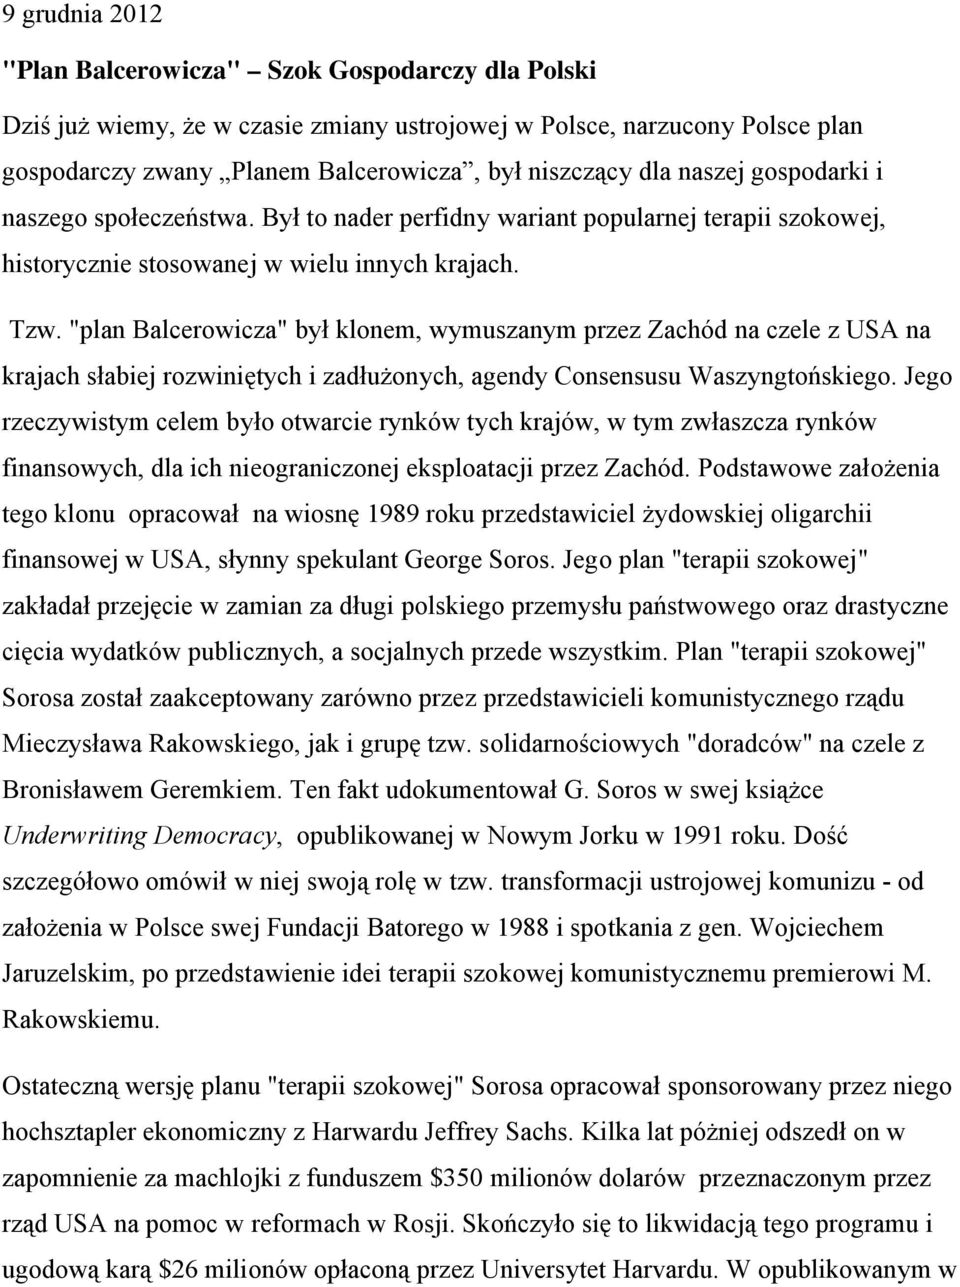 "plan Balcerowicza" był klonem, wymuszanym przez Zachód na czele z USA na krajach słabiej rozwiniętych i zadłużonych, agendy Consensusu Waszyngtońskiego.